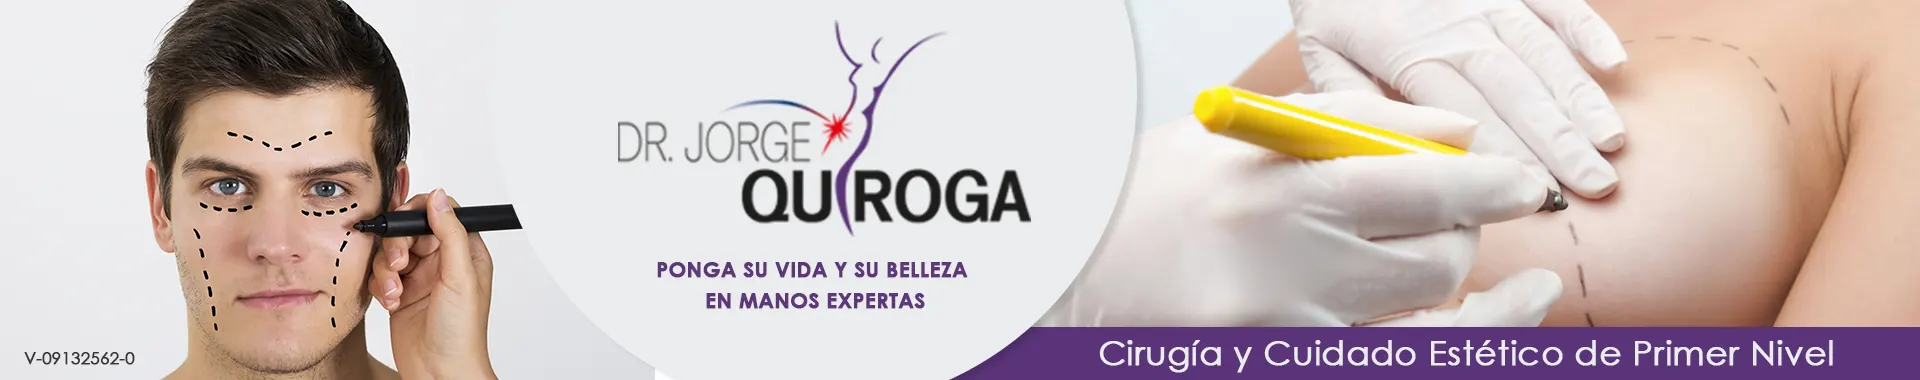 Imagen 1 del perfil de Dr. Jorge Quiroga